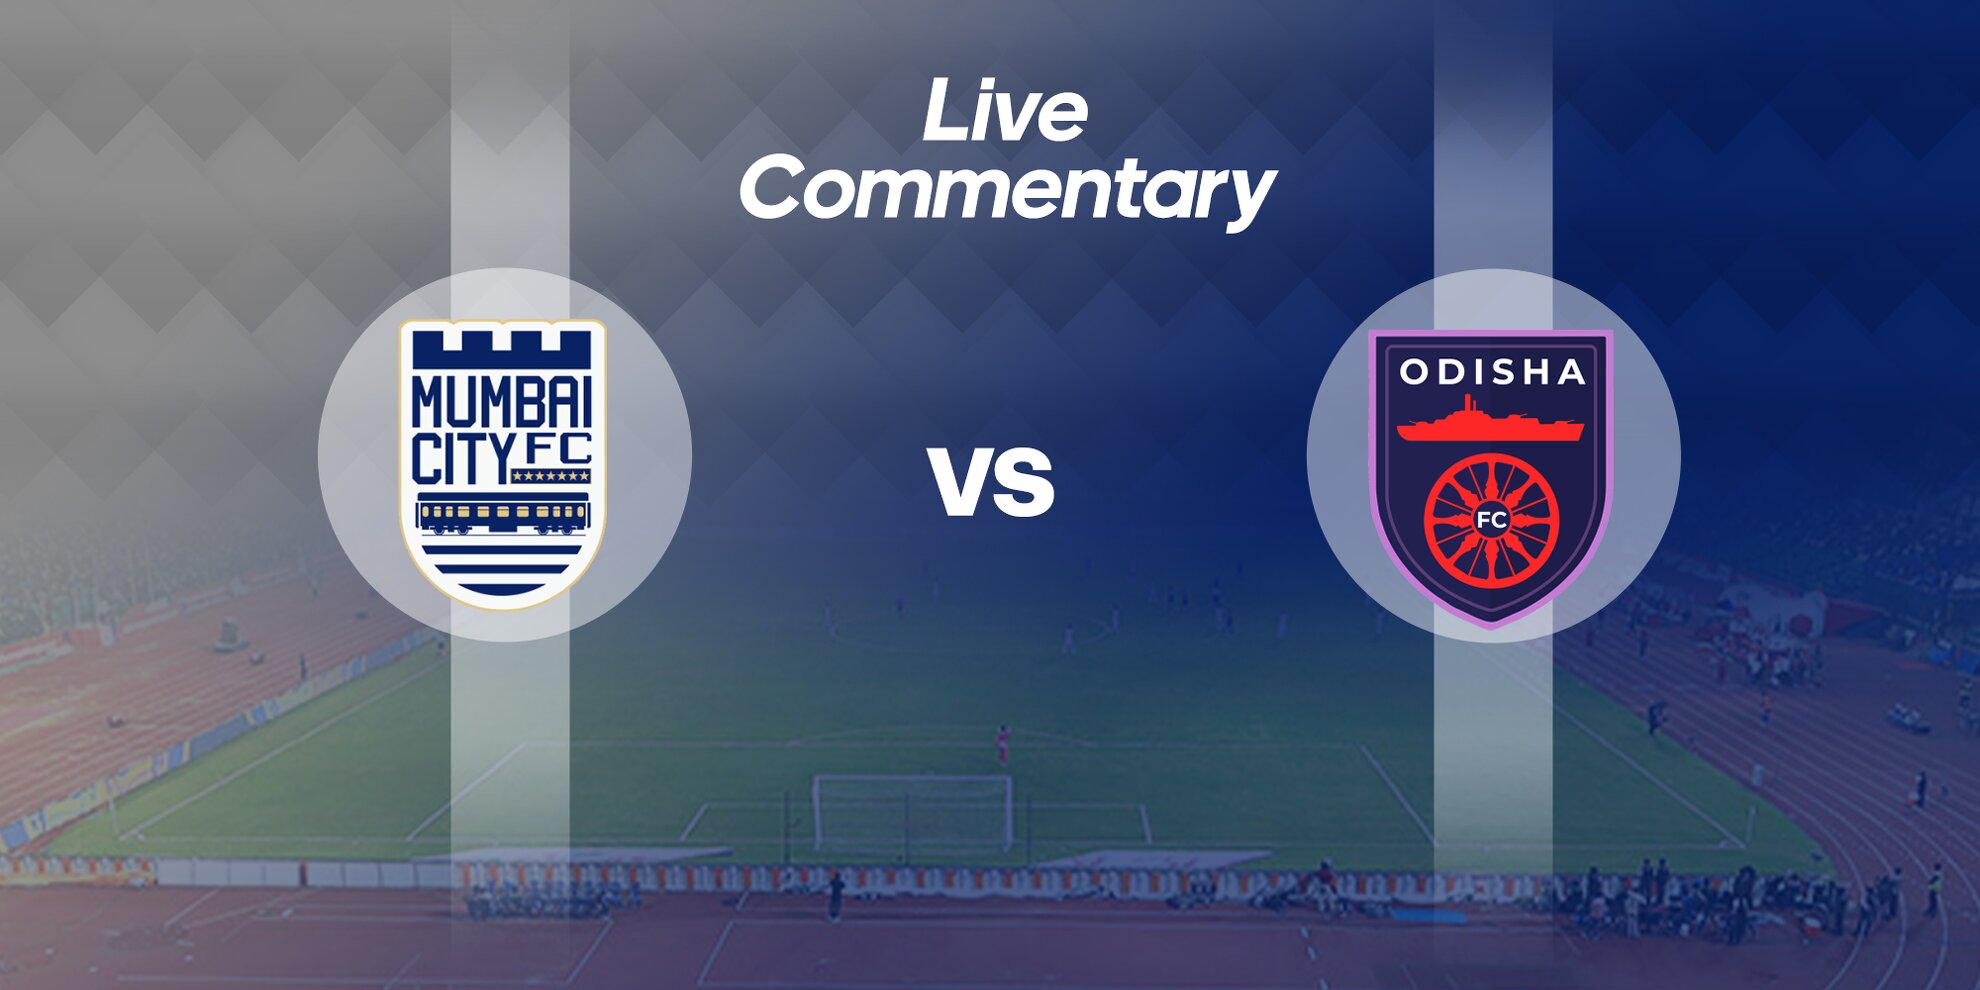 ISL 2019-20 Mumbai City FC Vs Odisha FC Live Commentary